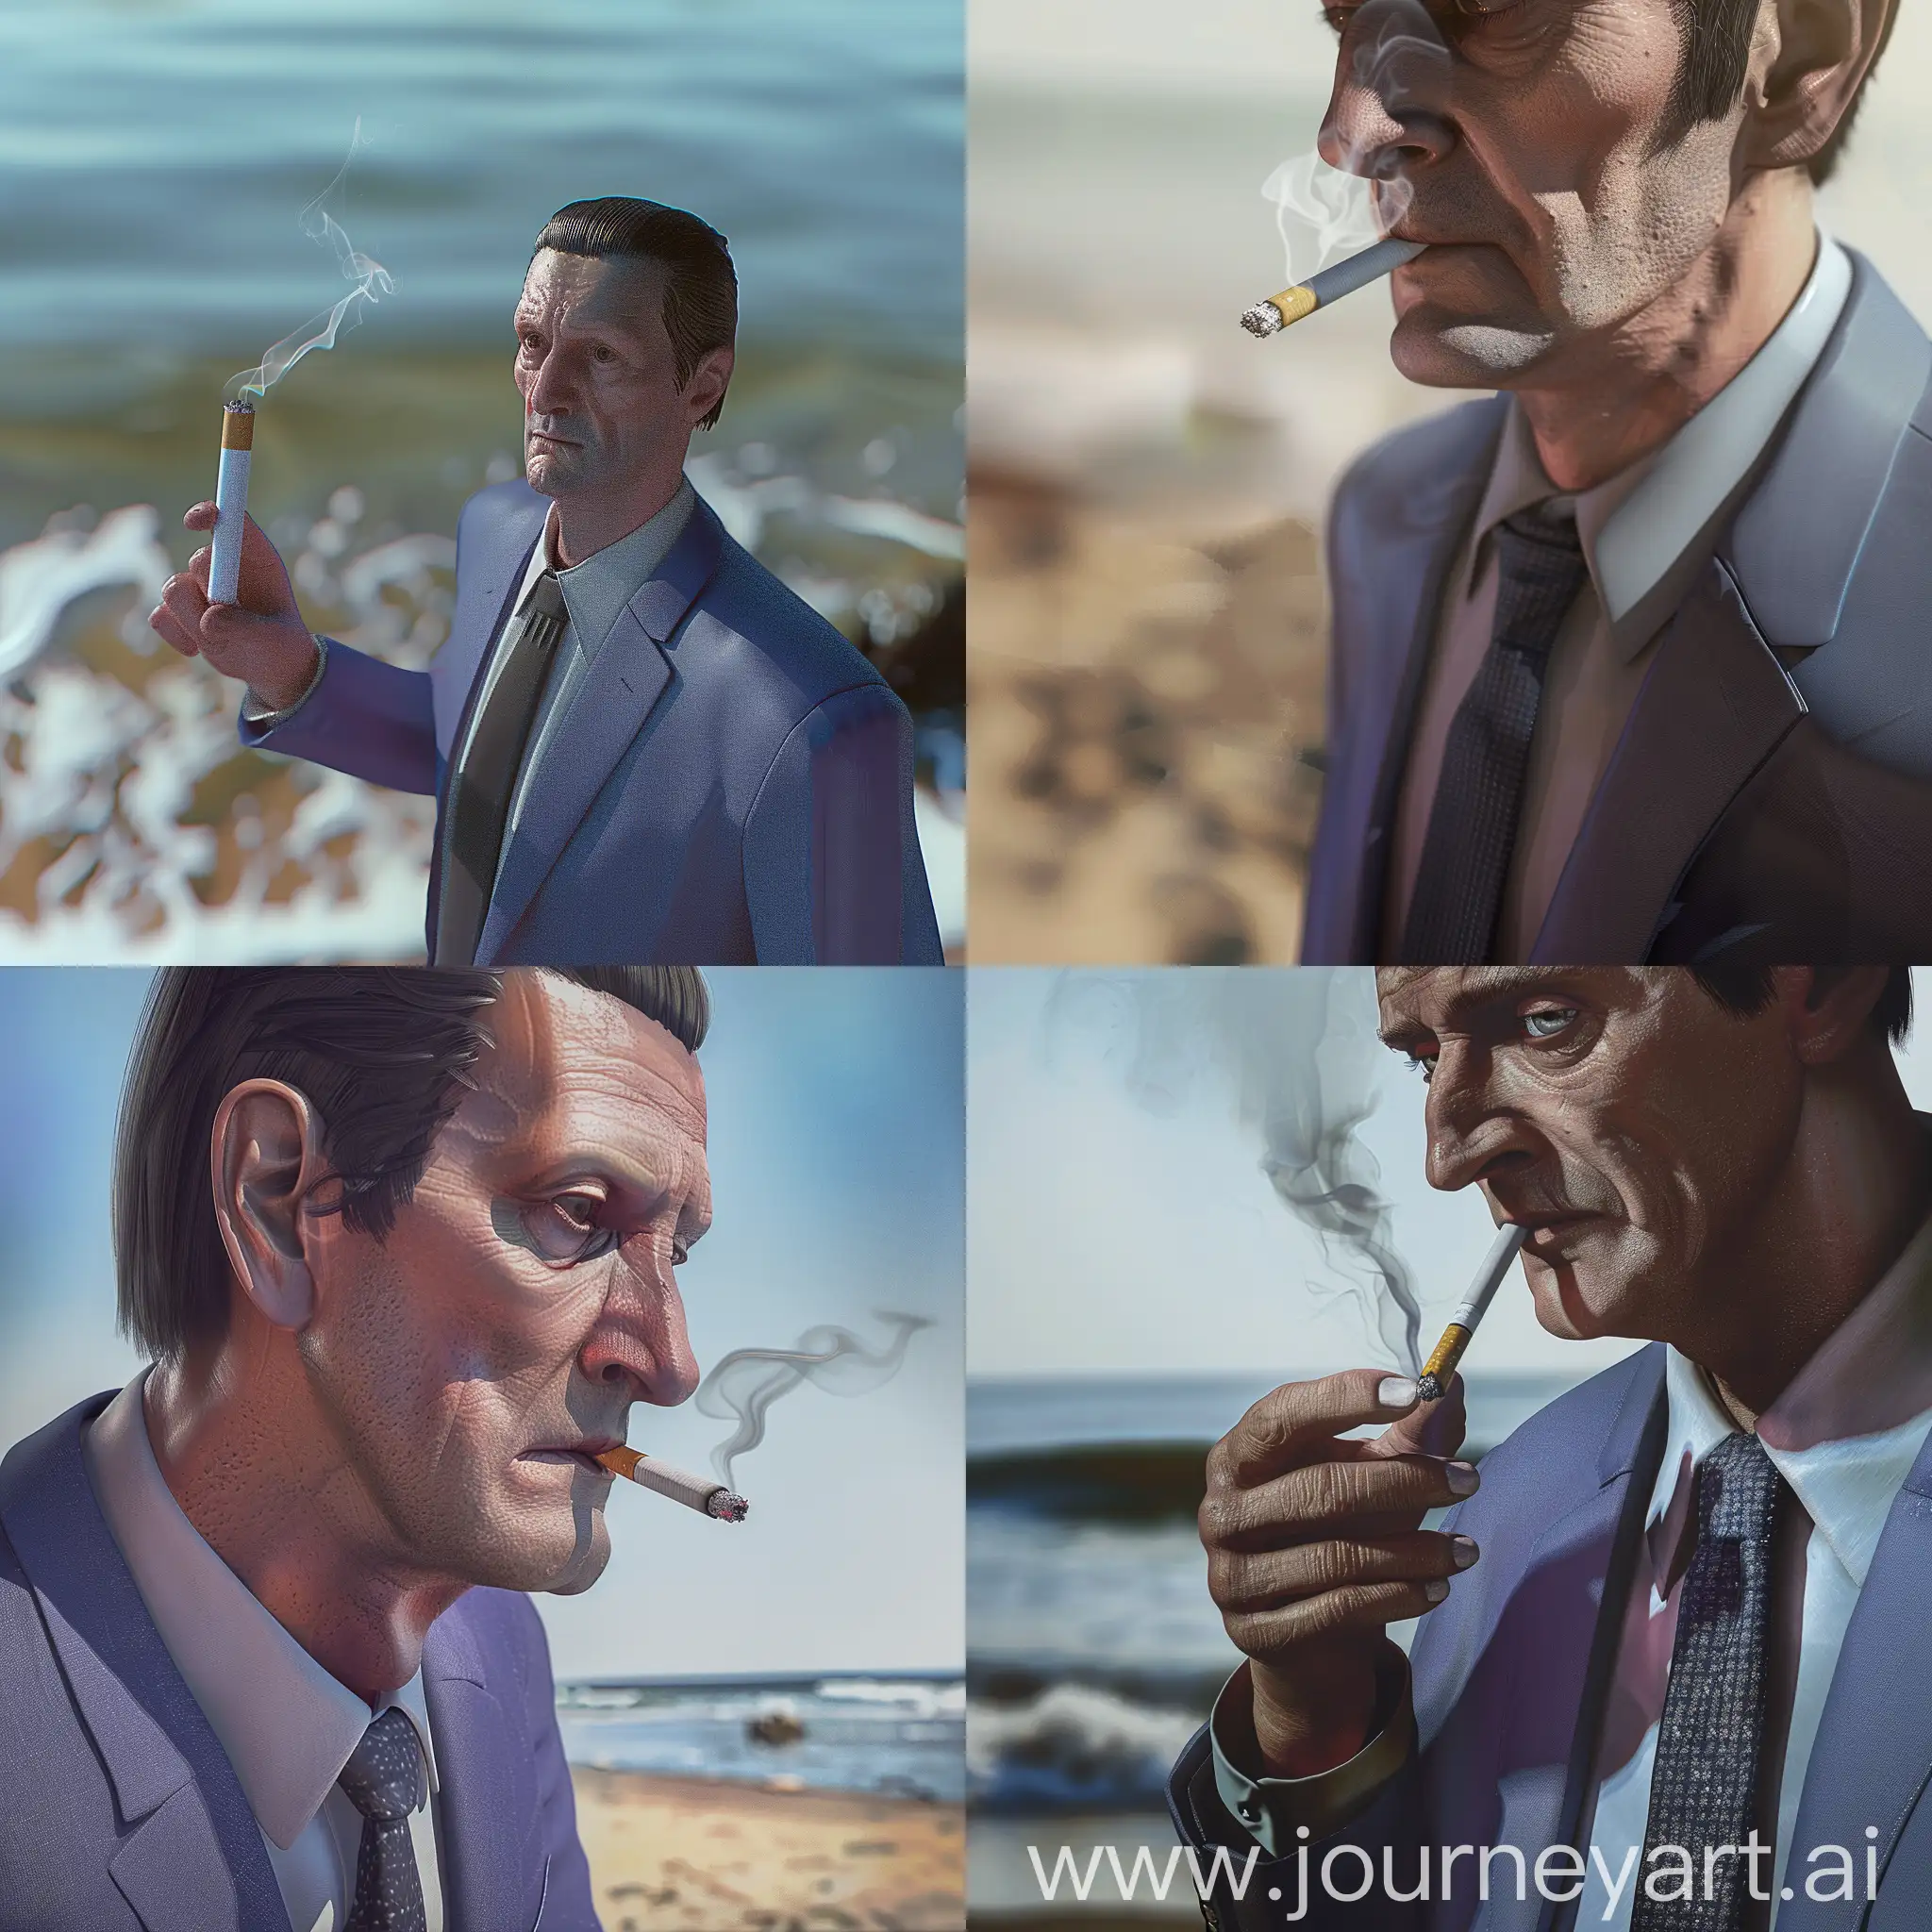 курит сигарету, задний фон пляж, максимум деталей, супер детализация, 8к, гипер реализм